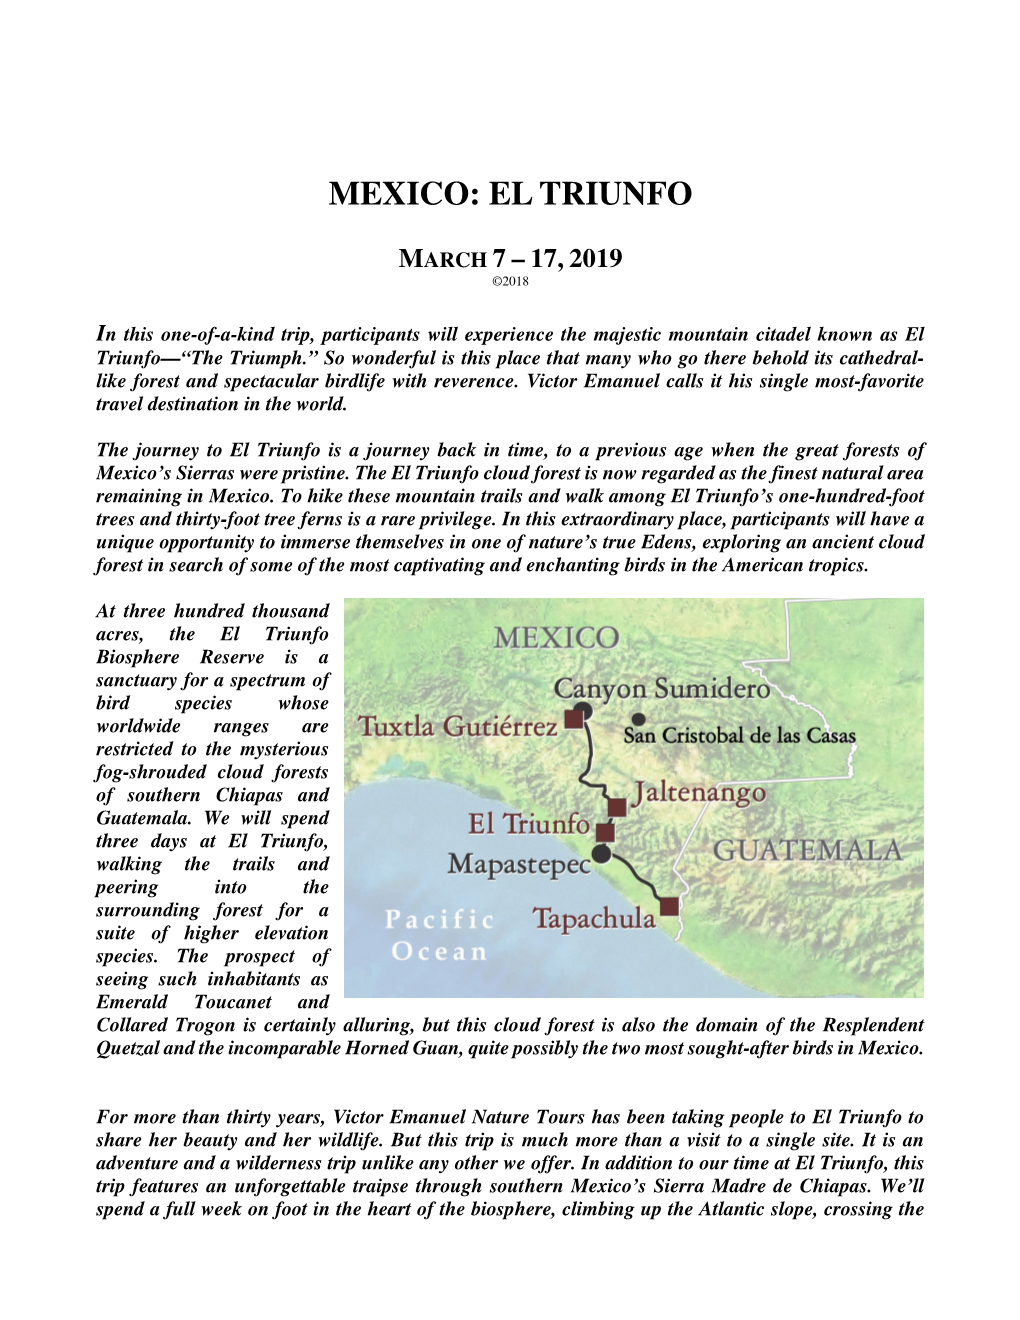 Mexico: El Triunfo